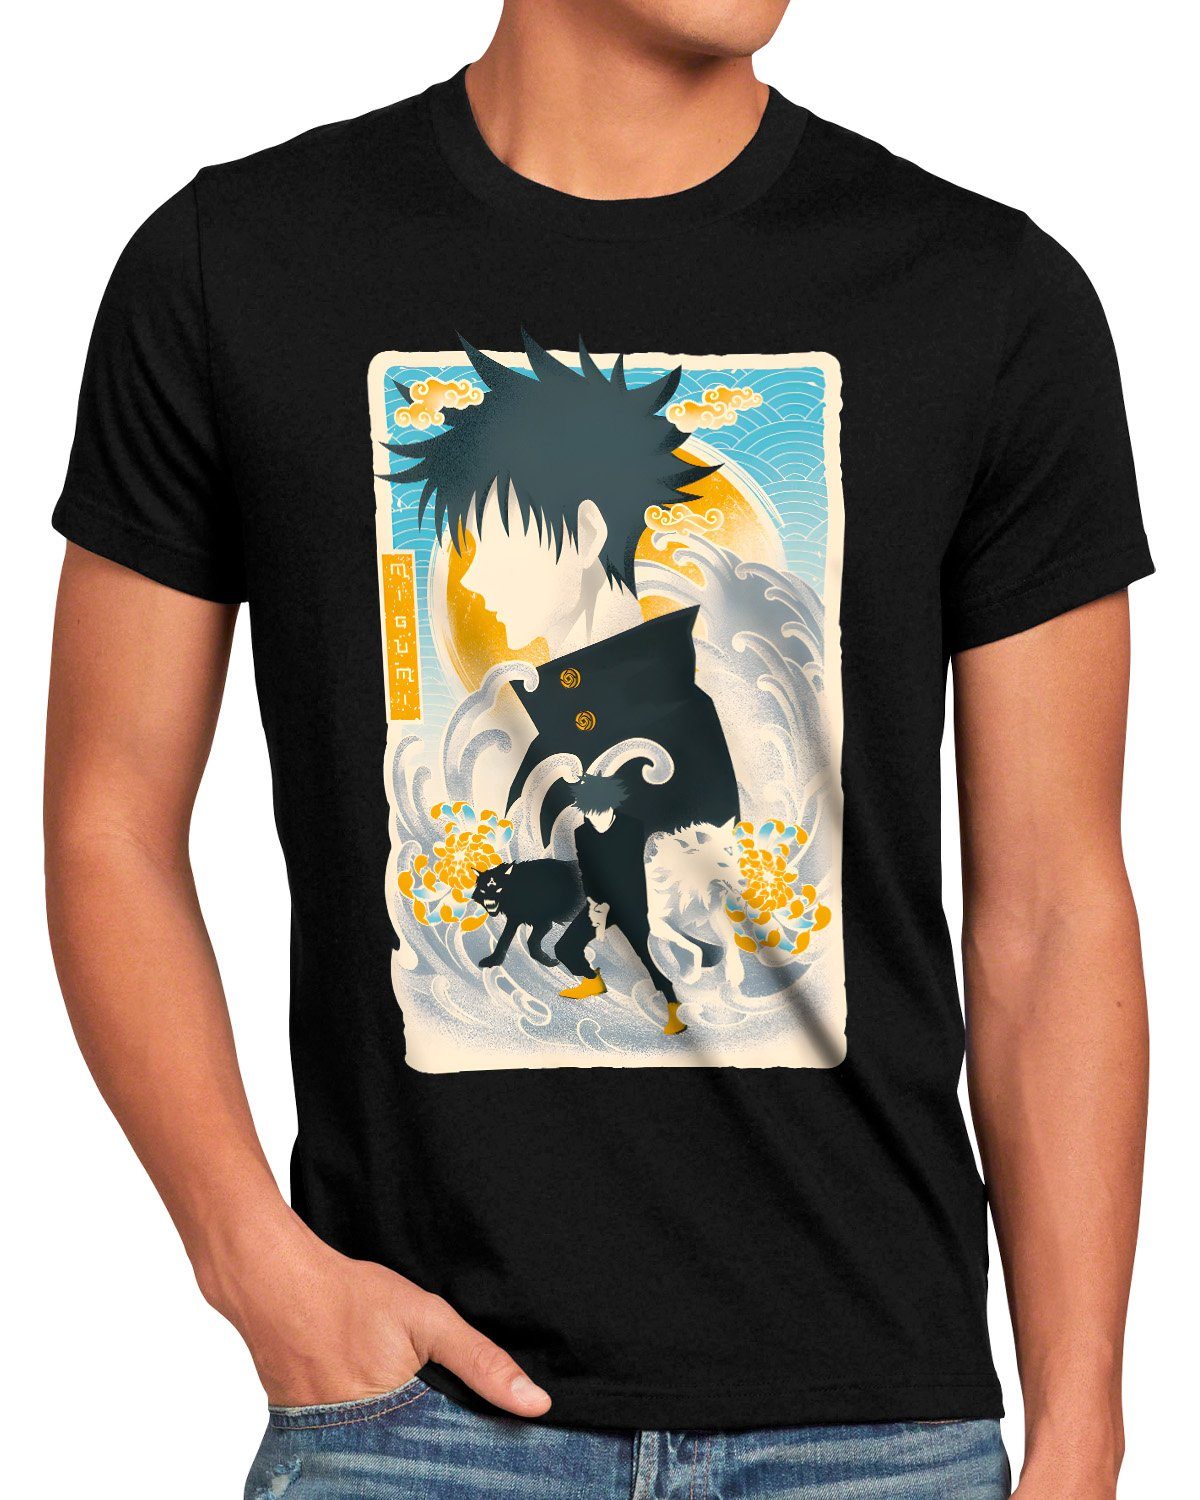 Super beliebt, hohe Qualität garantiert style3 Print-Shirt kaisen anime japan jujutsu manga